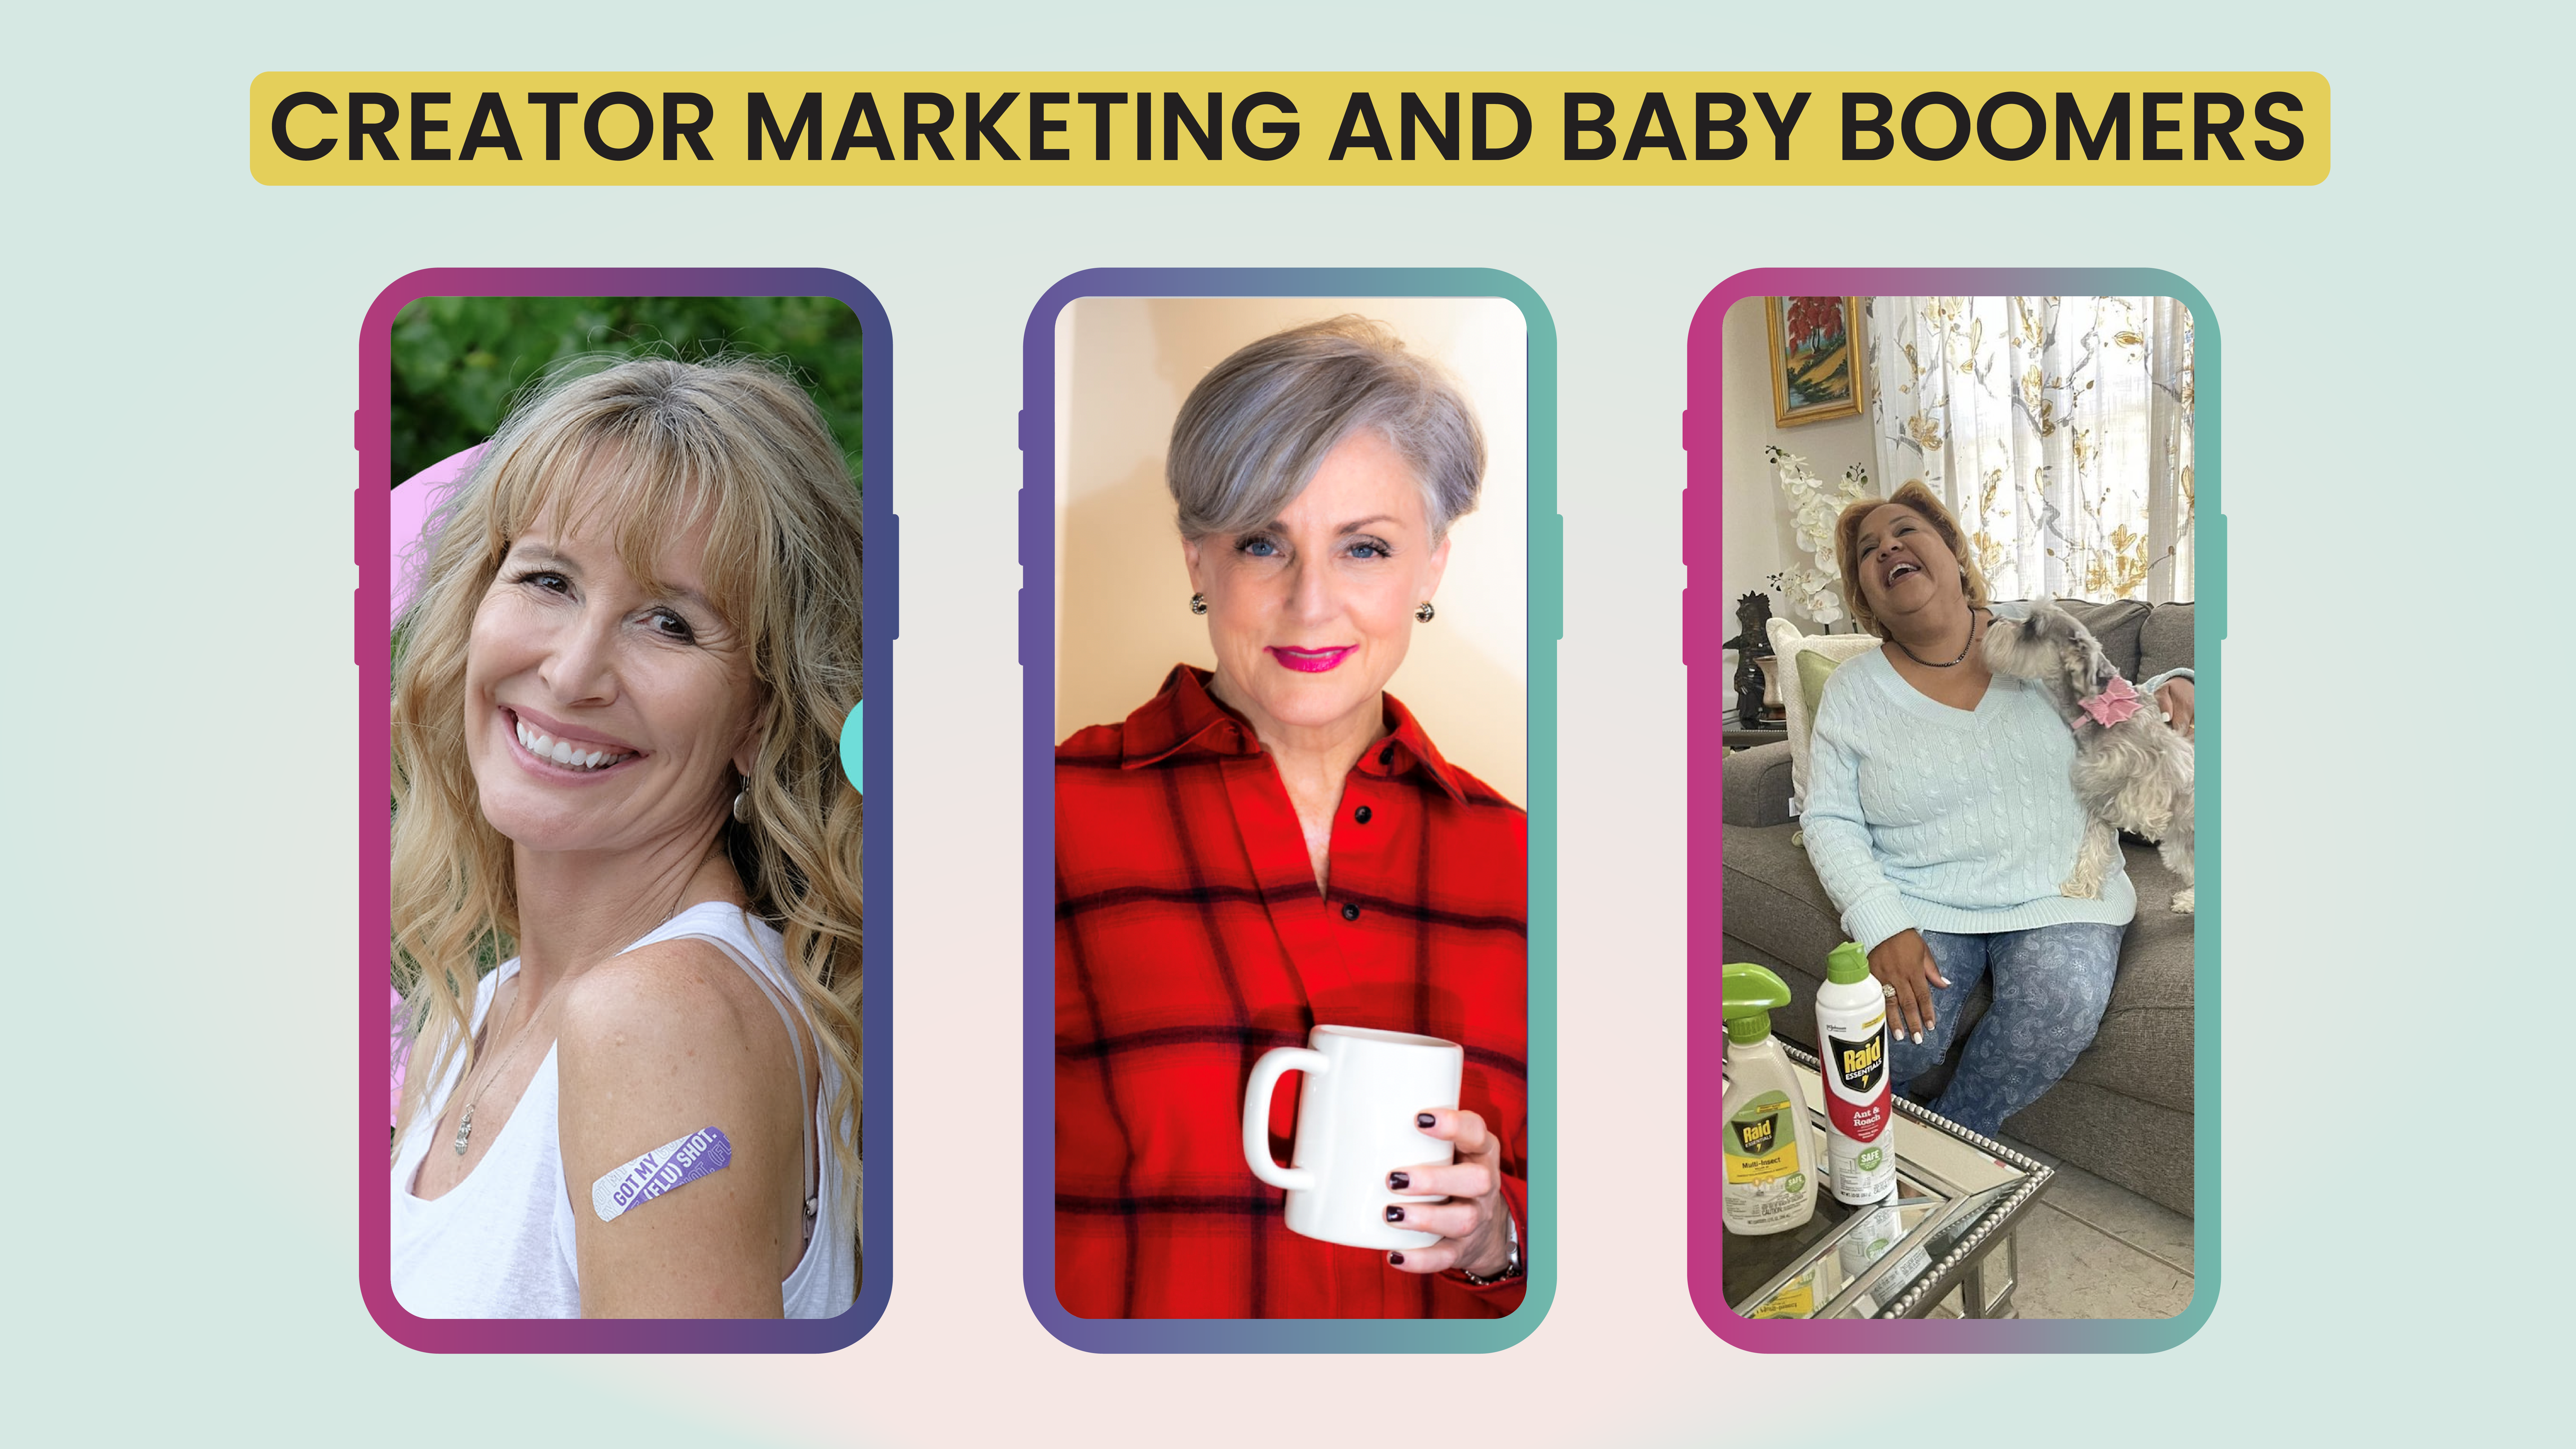 Baby boomers and TikTok creator marketing